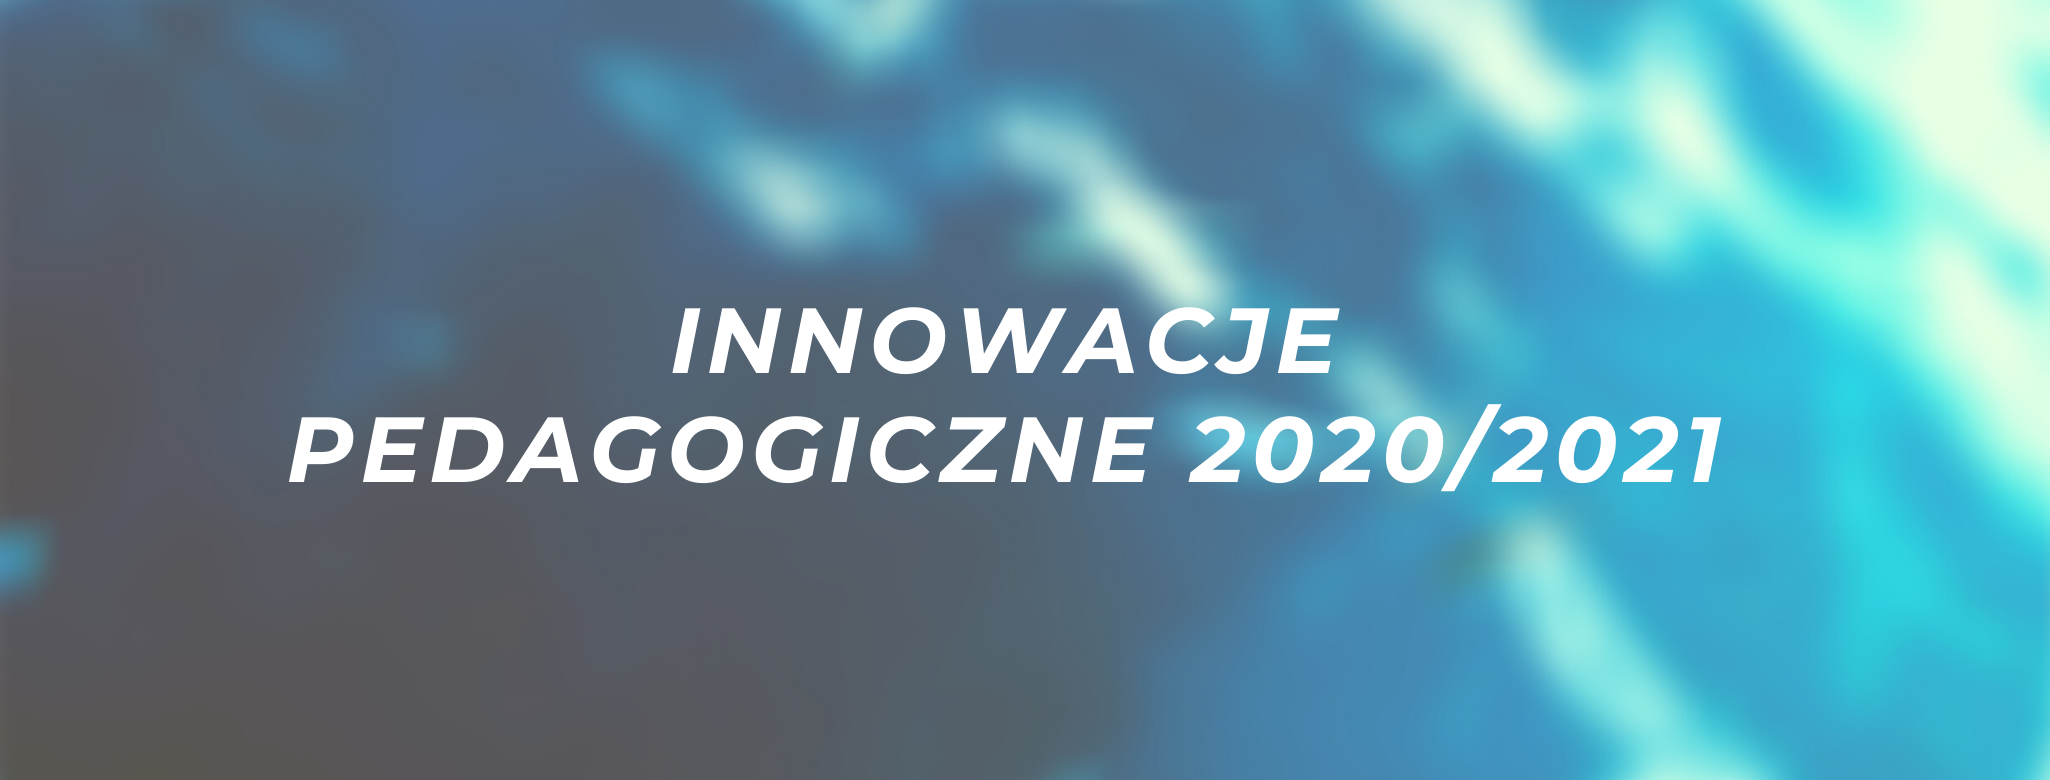 Innowacje pedagogiczne 2020/2021